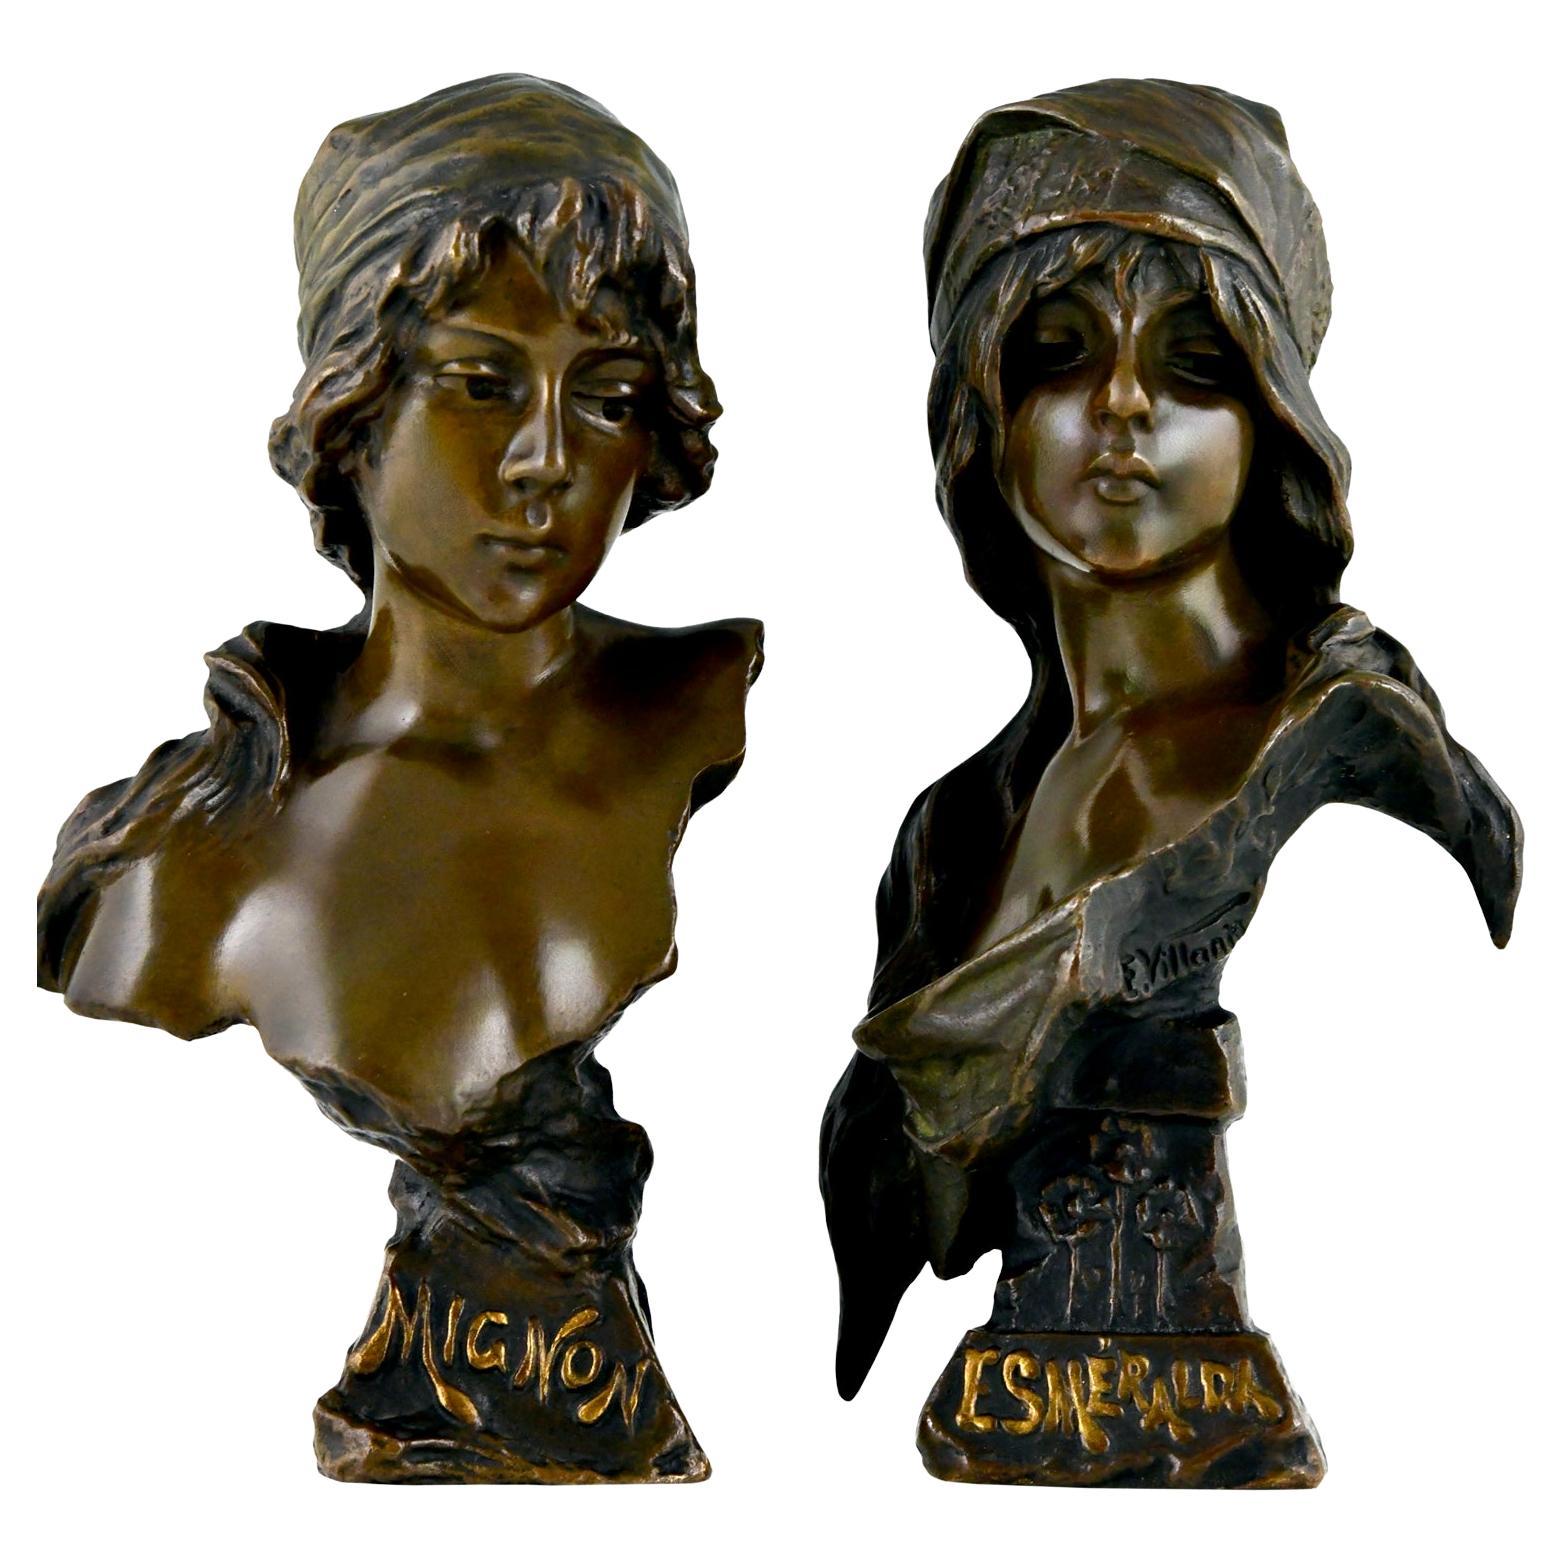 Pair of Art Nouveau bronze busts Mignon and Esmeralda by Emmanuel Villanis, 1896